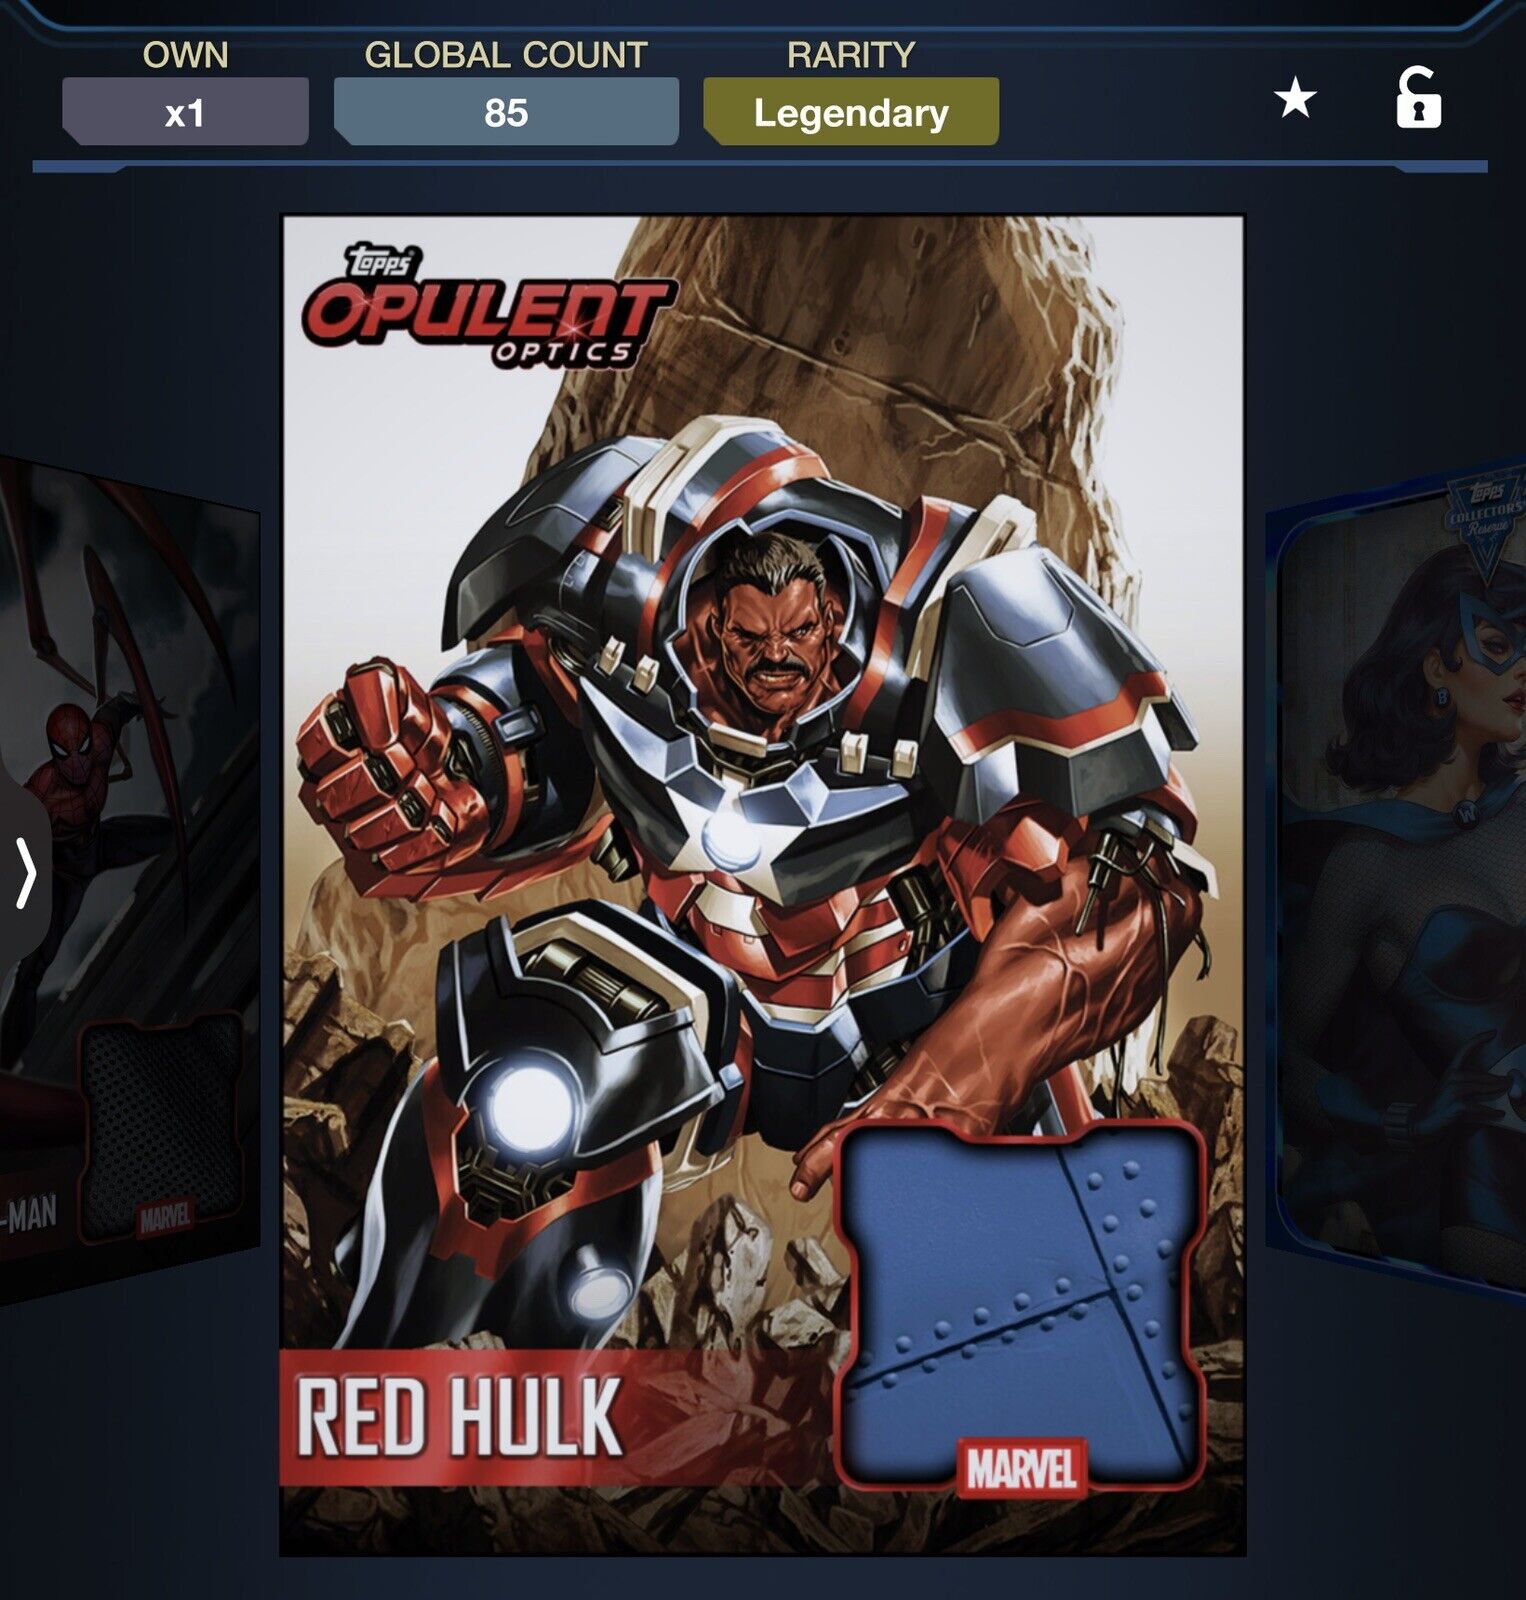 TOPPS Marvel Collect LEGENDARY OPULENT OPTICS LEGENDARY RED HULK